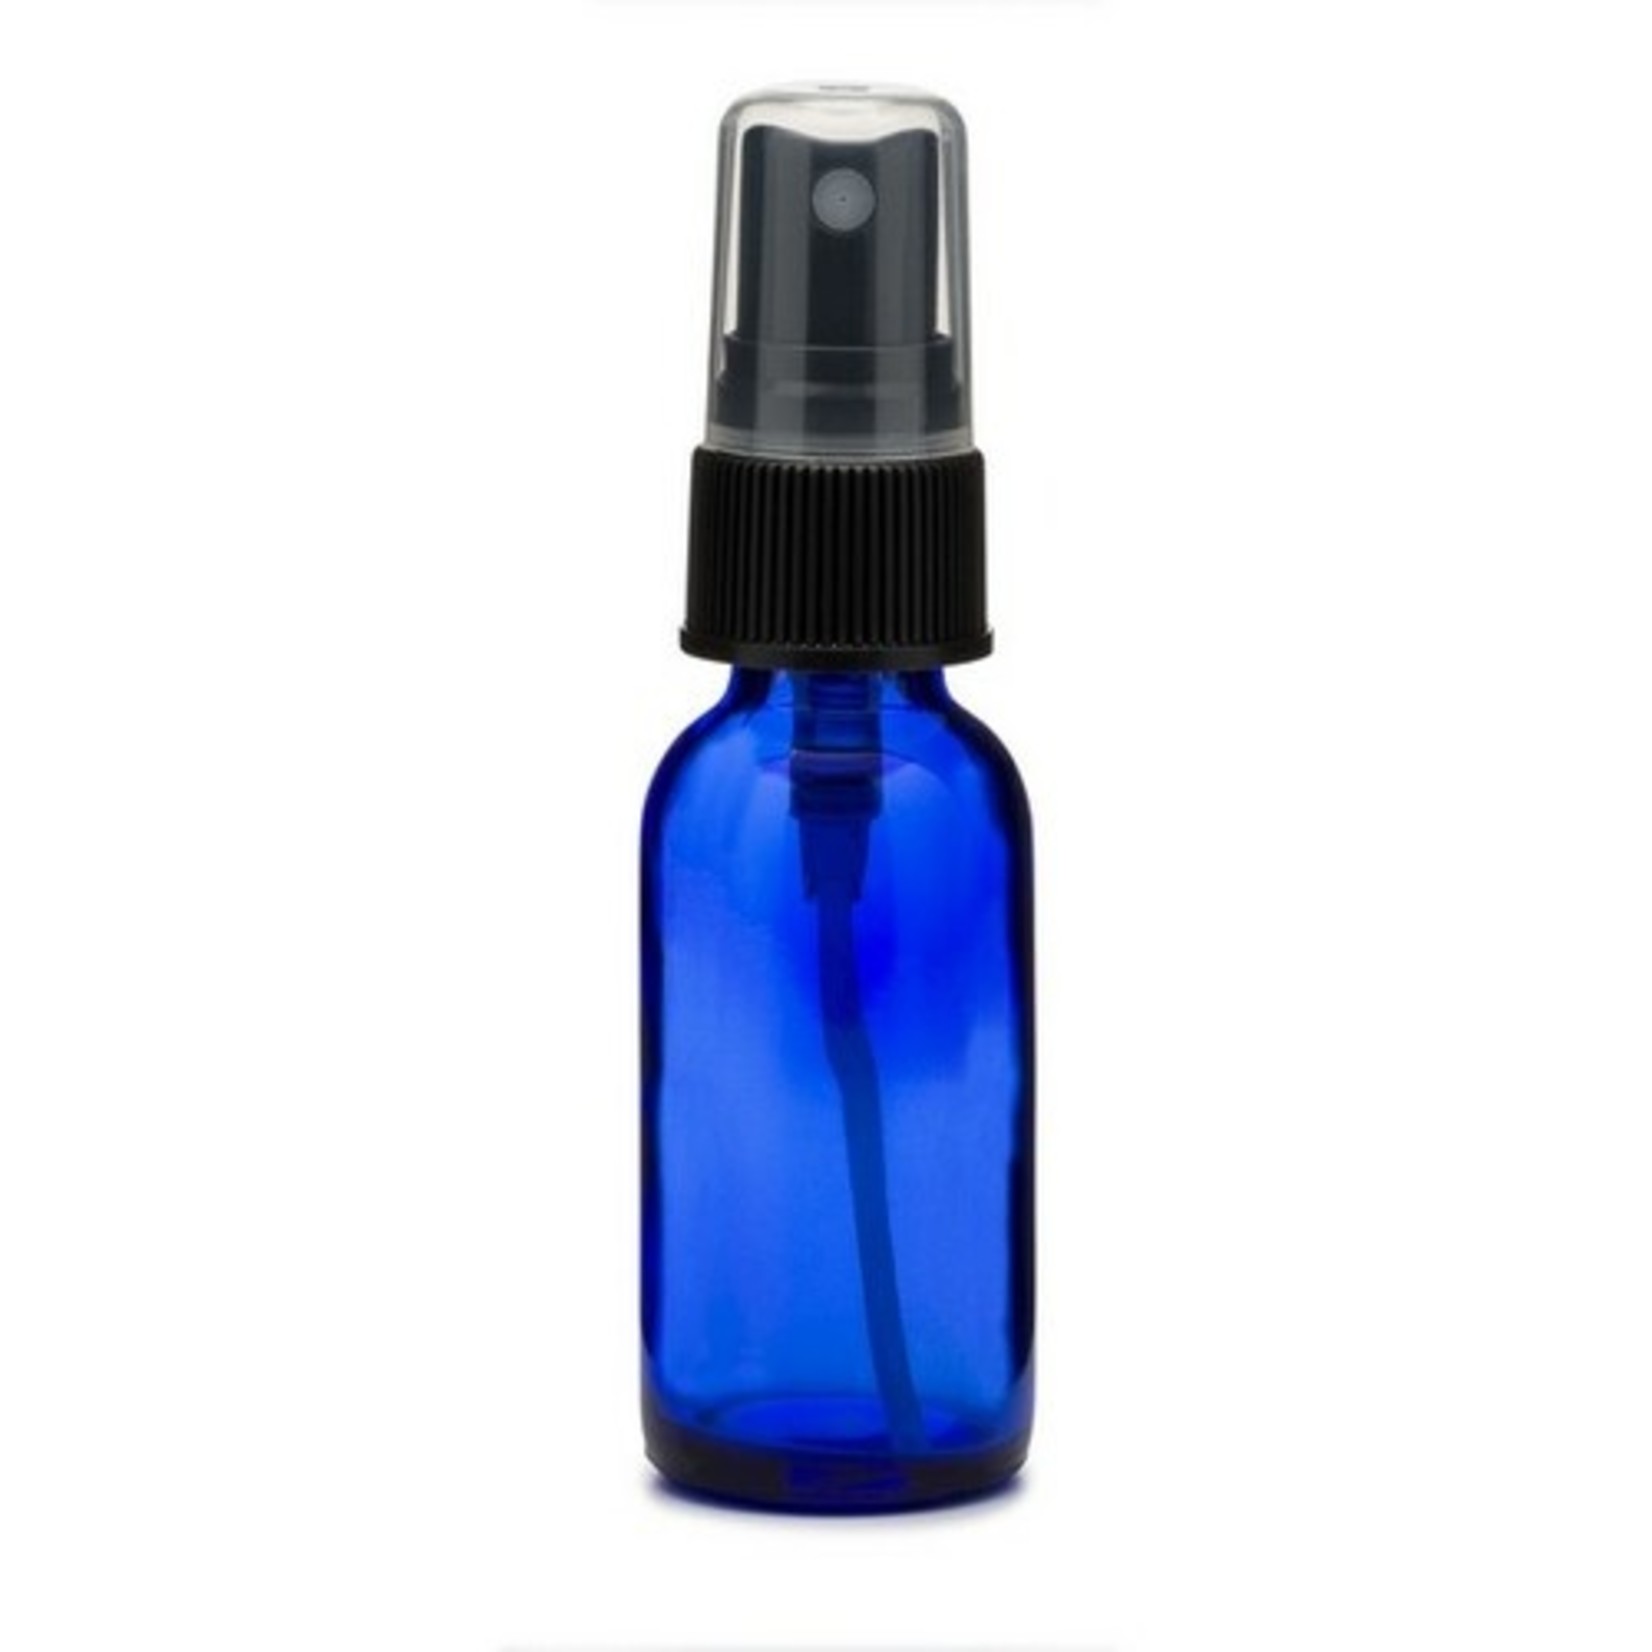 Wyndmere Wyndmere - 1 oz Cobalt Blue Glass Bottle With Mist Sprayer - 1 oz